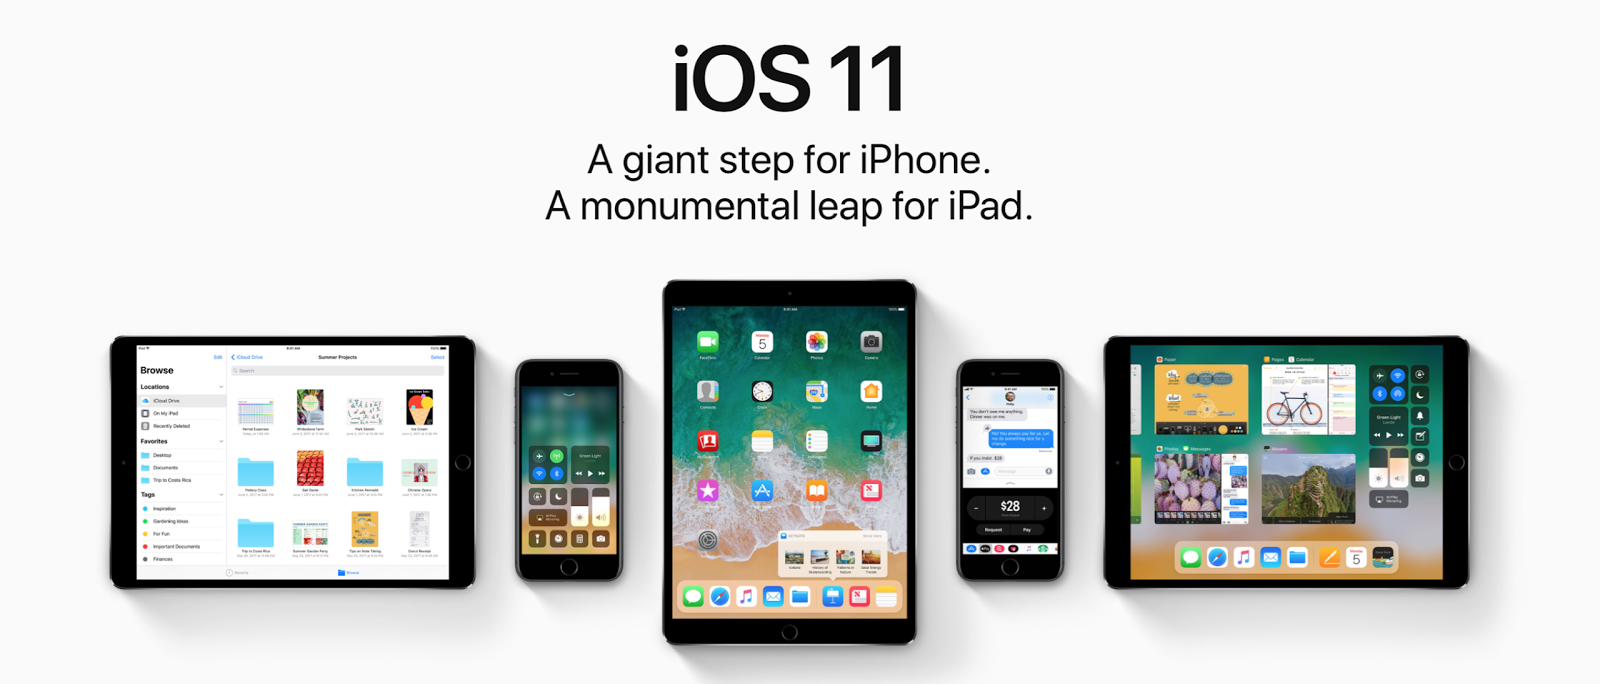 Image 1. Az iOS 11 operációs rendszer új funkcióinak, jellemzőinek és zsetonjainak áttekintése az iPhone és az iPad számára. Az IOS 11 és az iOS 10 operációs rendszereinek összehasonlítása